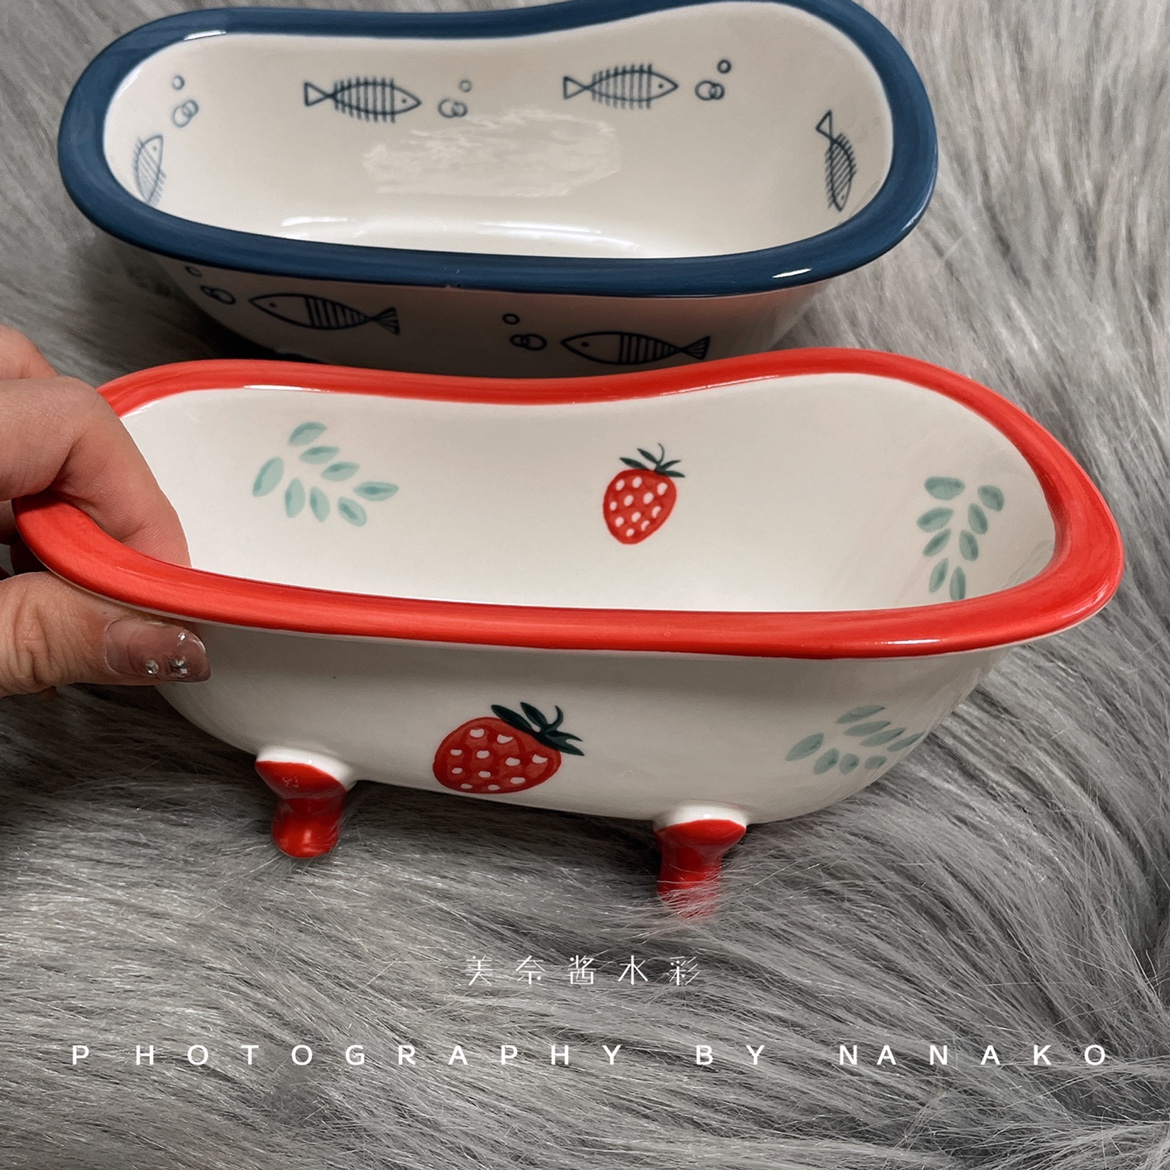 可爱草莓 小鱼浴缸陶瓷笔洗 洗笔筒洗笔缸